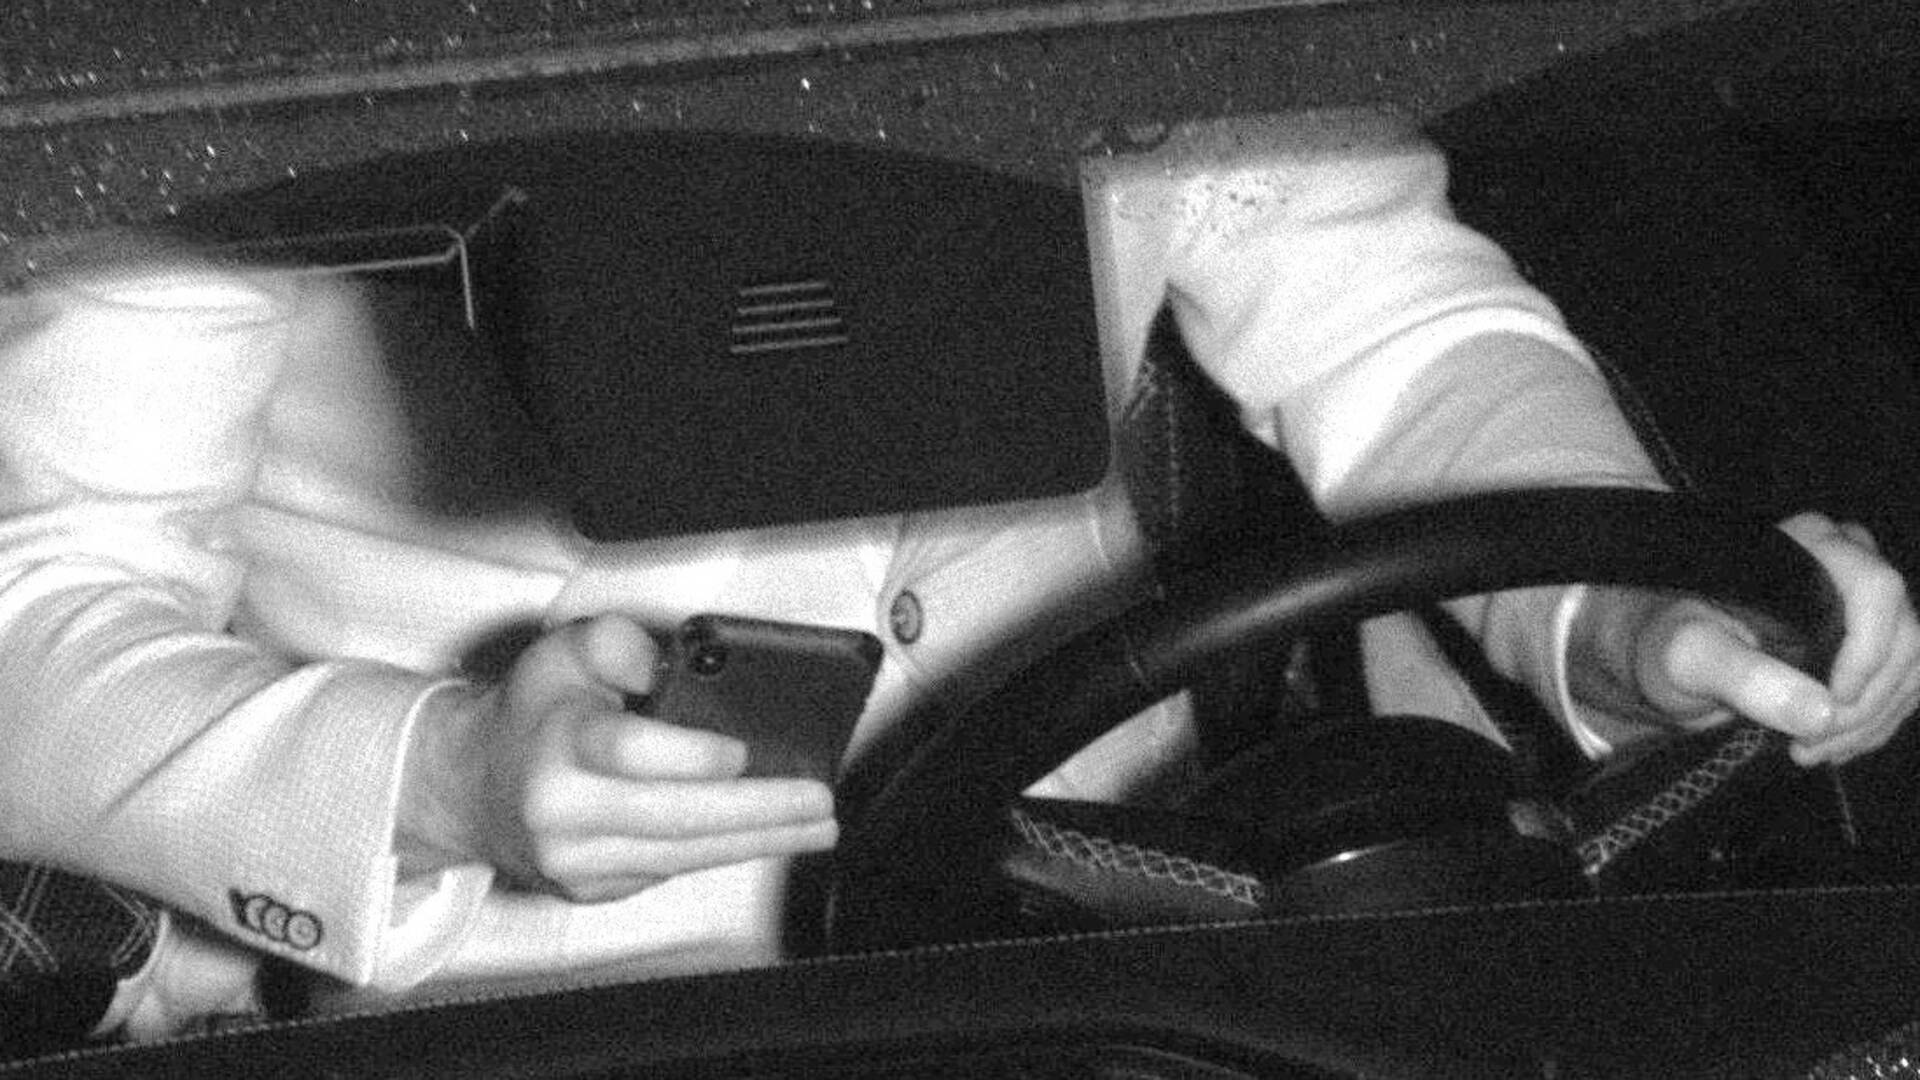 استخدام الكاميرات الذكية لتغريم المخالفين أثناء القيادة